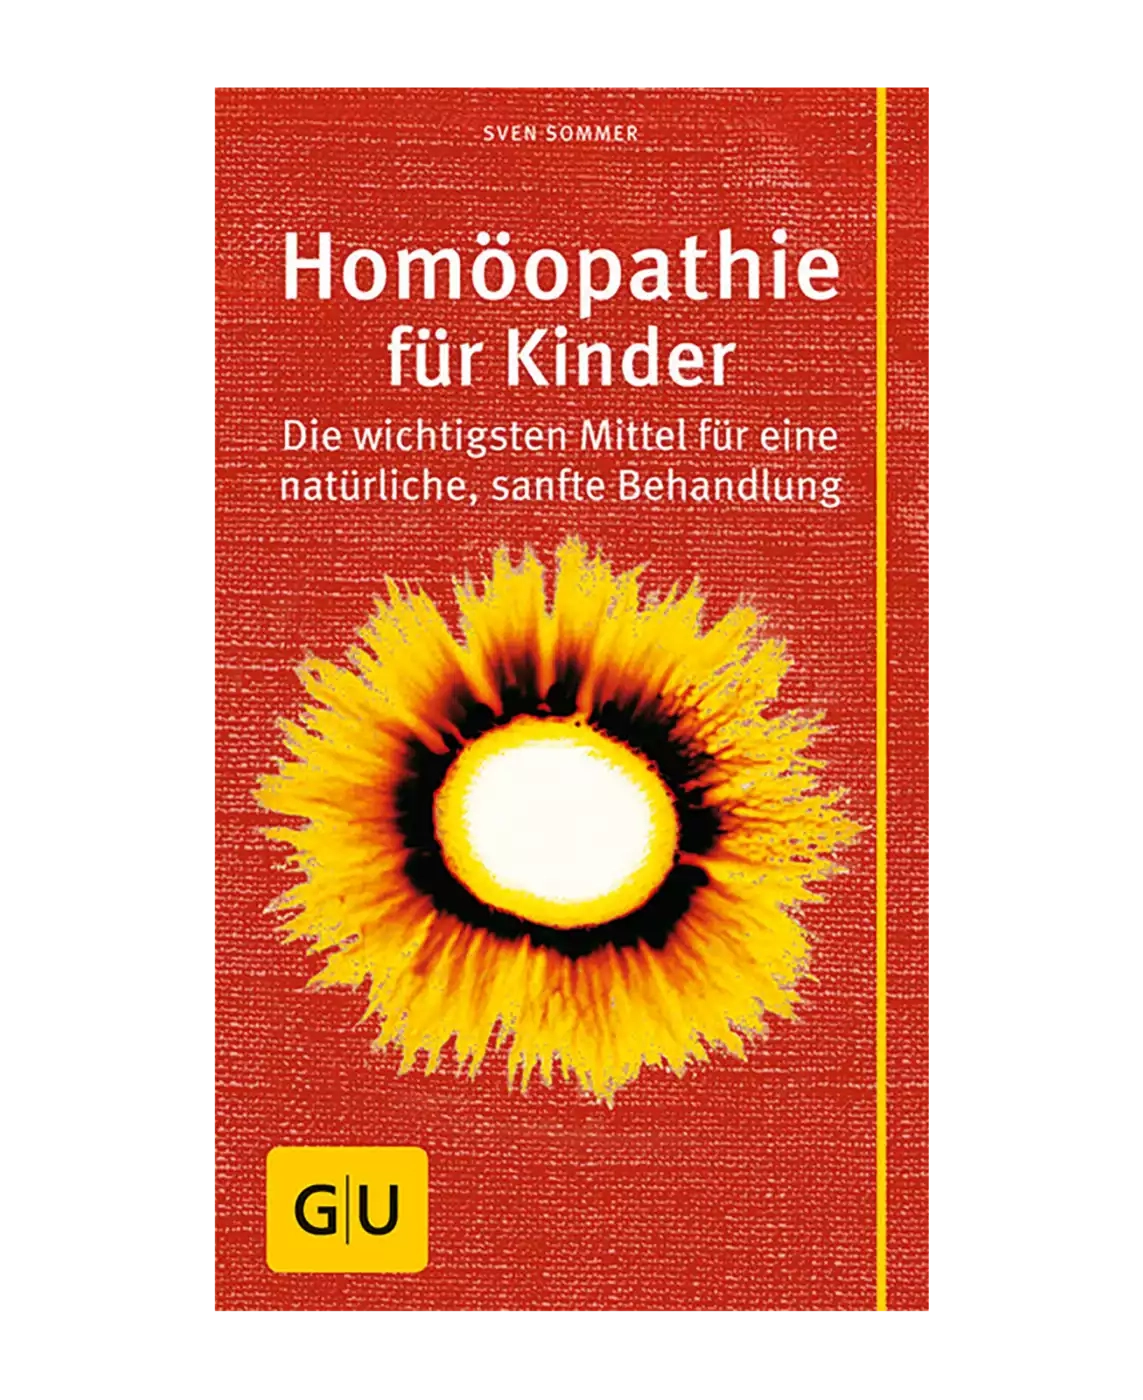 Homöopathie für Kinder GU 2000570956606 3